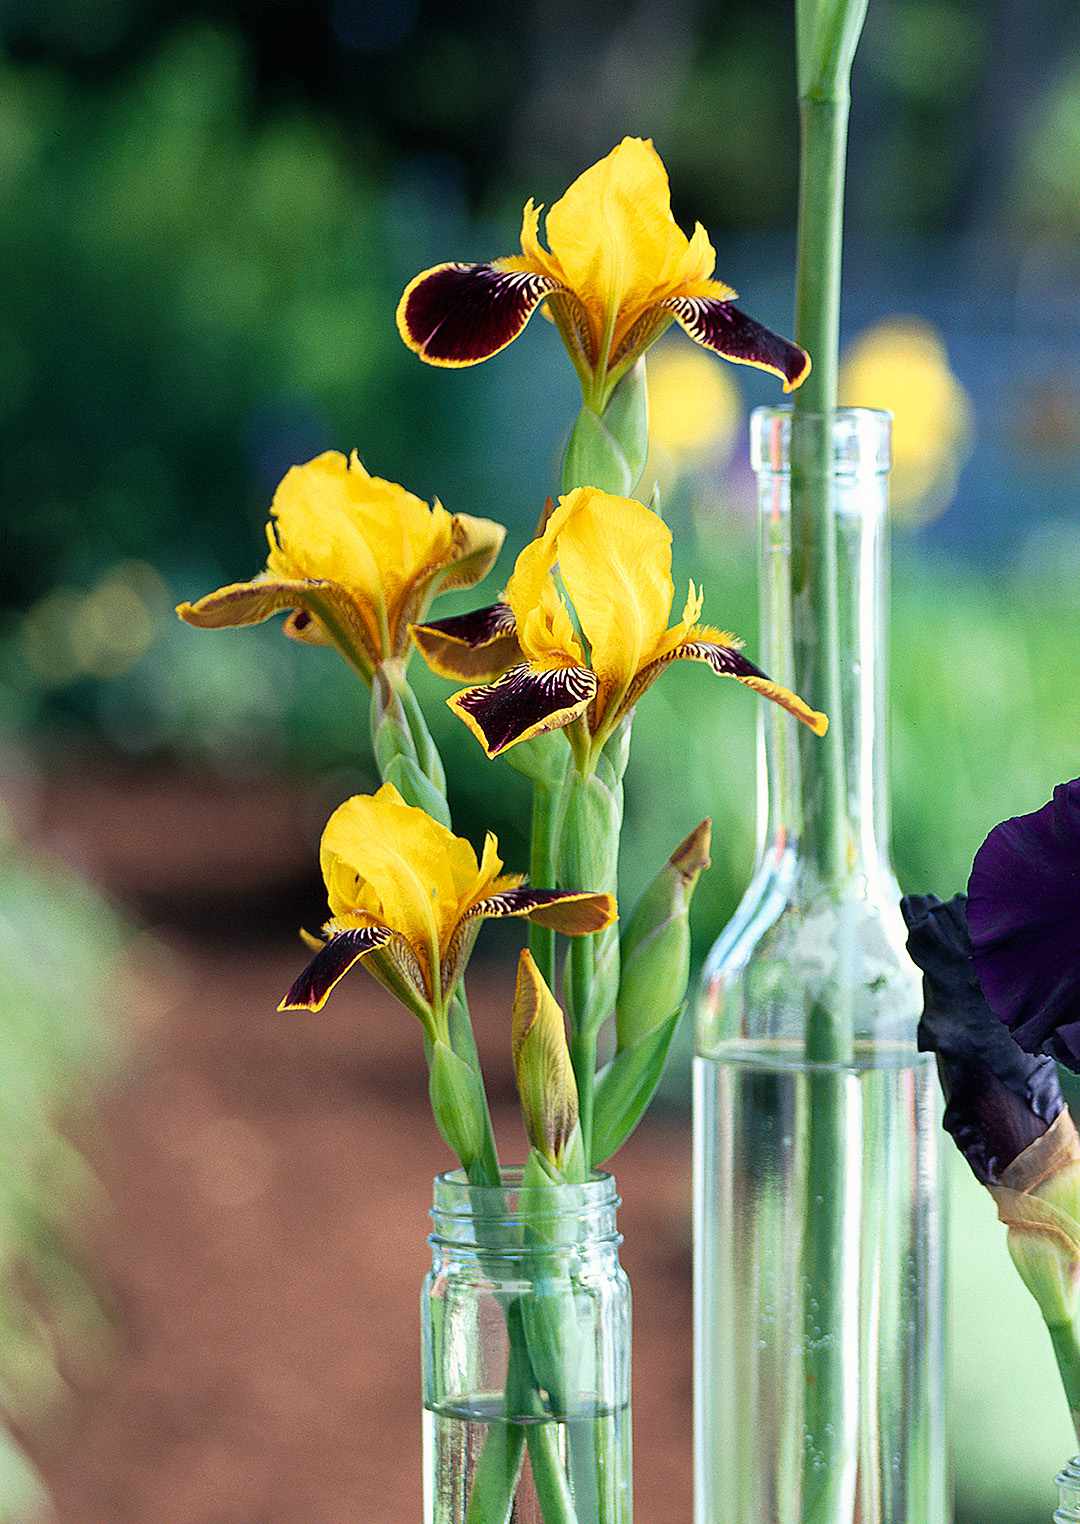 bumblebee deelite dwarf bearded iris in glass bottle